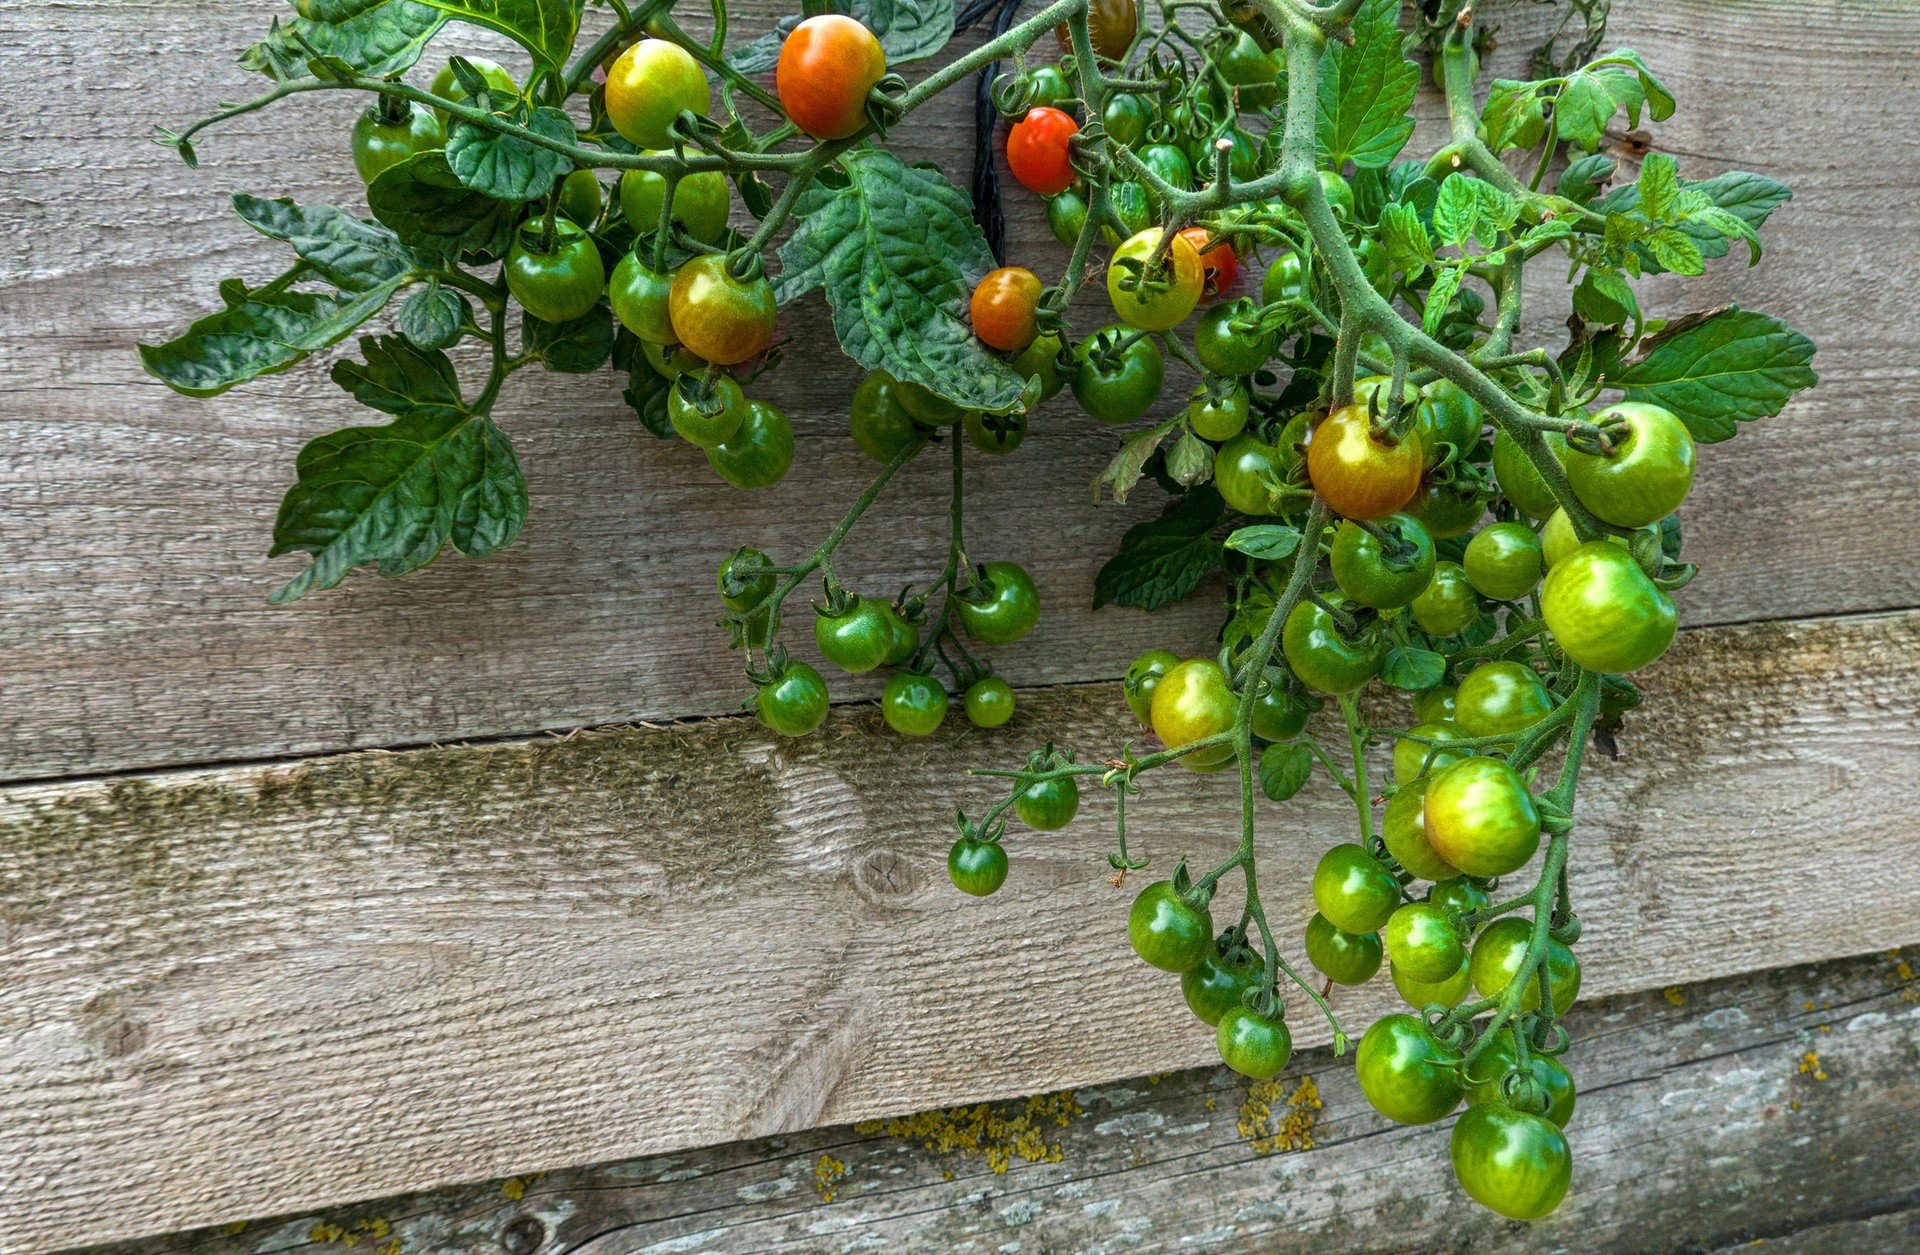 Pomidory rosnące „do góry nogami” – jak je hodować? Oryginalna uprawa  pomidorów bez tajemnic. Zaoszczędzisz miejsce i zyskasz pyszne warzywa |  RegioDom